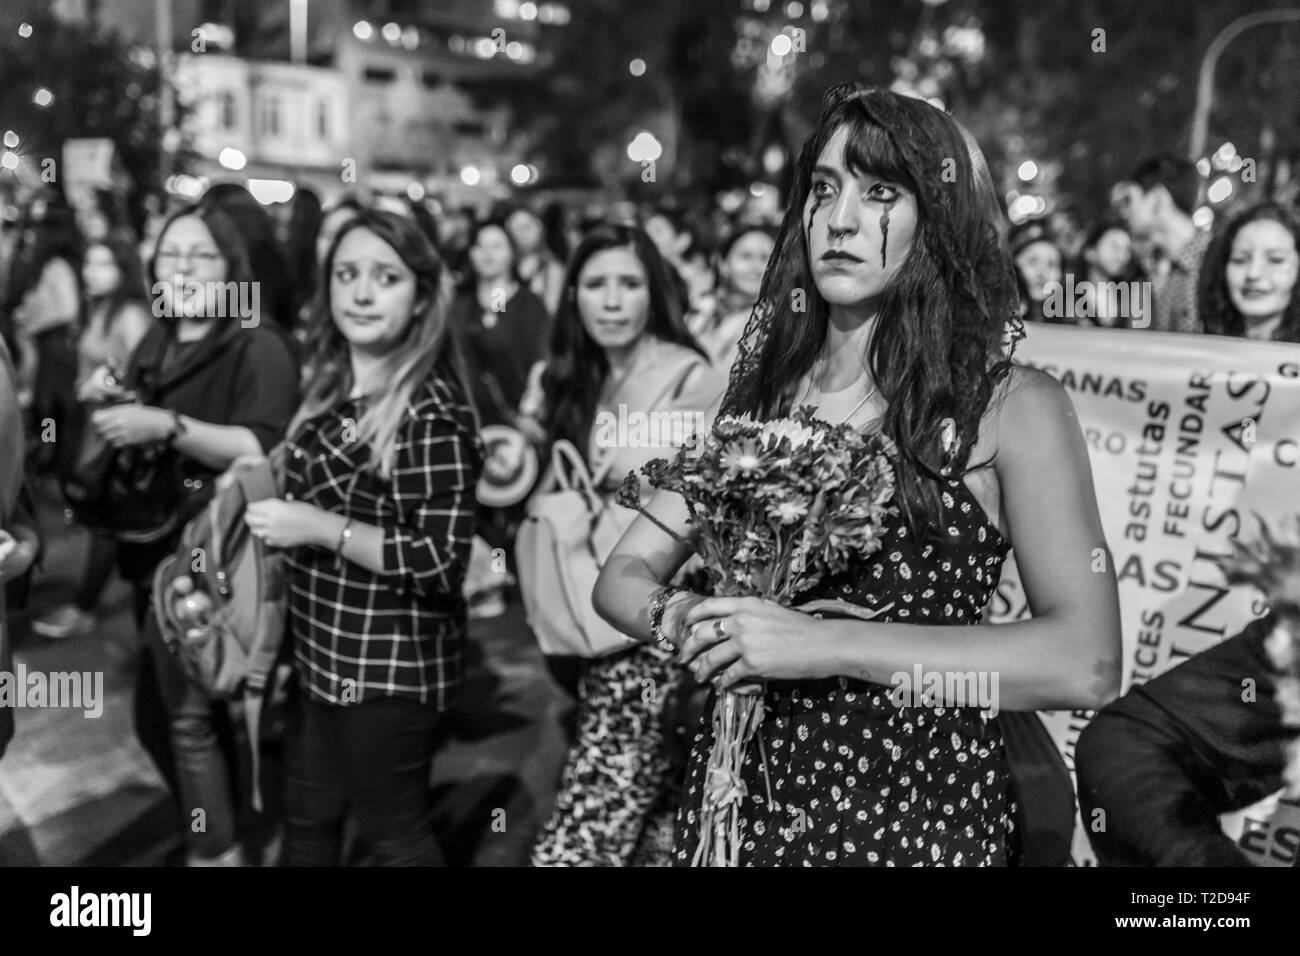 Der Internationale Tag der Frau am 8. März feministische Mädchen urban Stämme mit dem Tod kostüm Kleidung in den Frauentag Protest in Santiago, Chile, City Centre Street Stockfoto